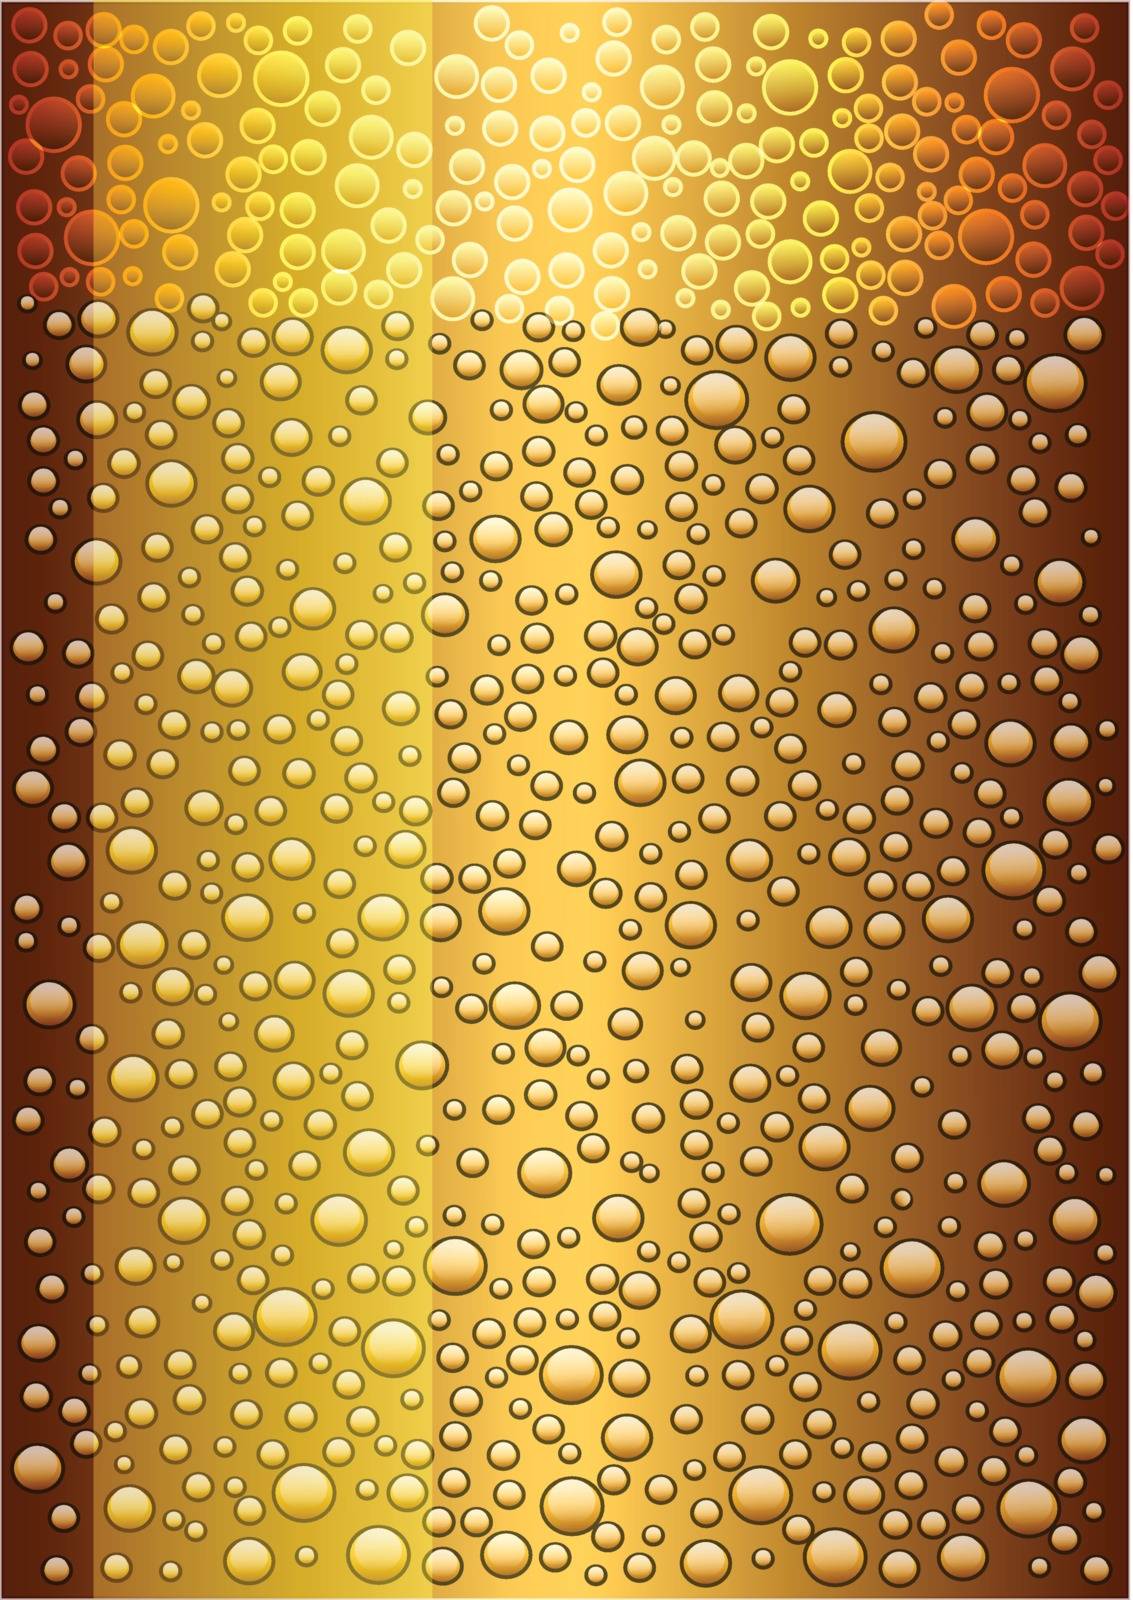 A full glass of dark beer. Vector illustration.